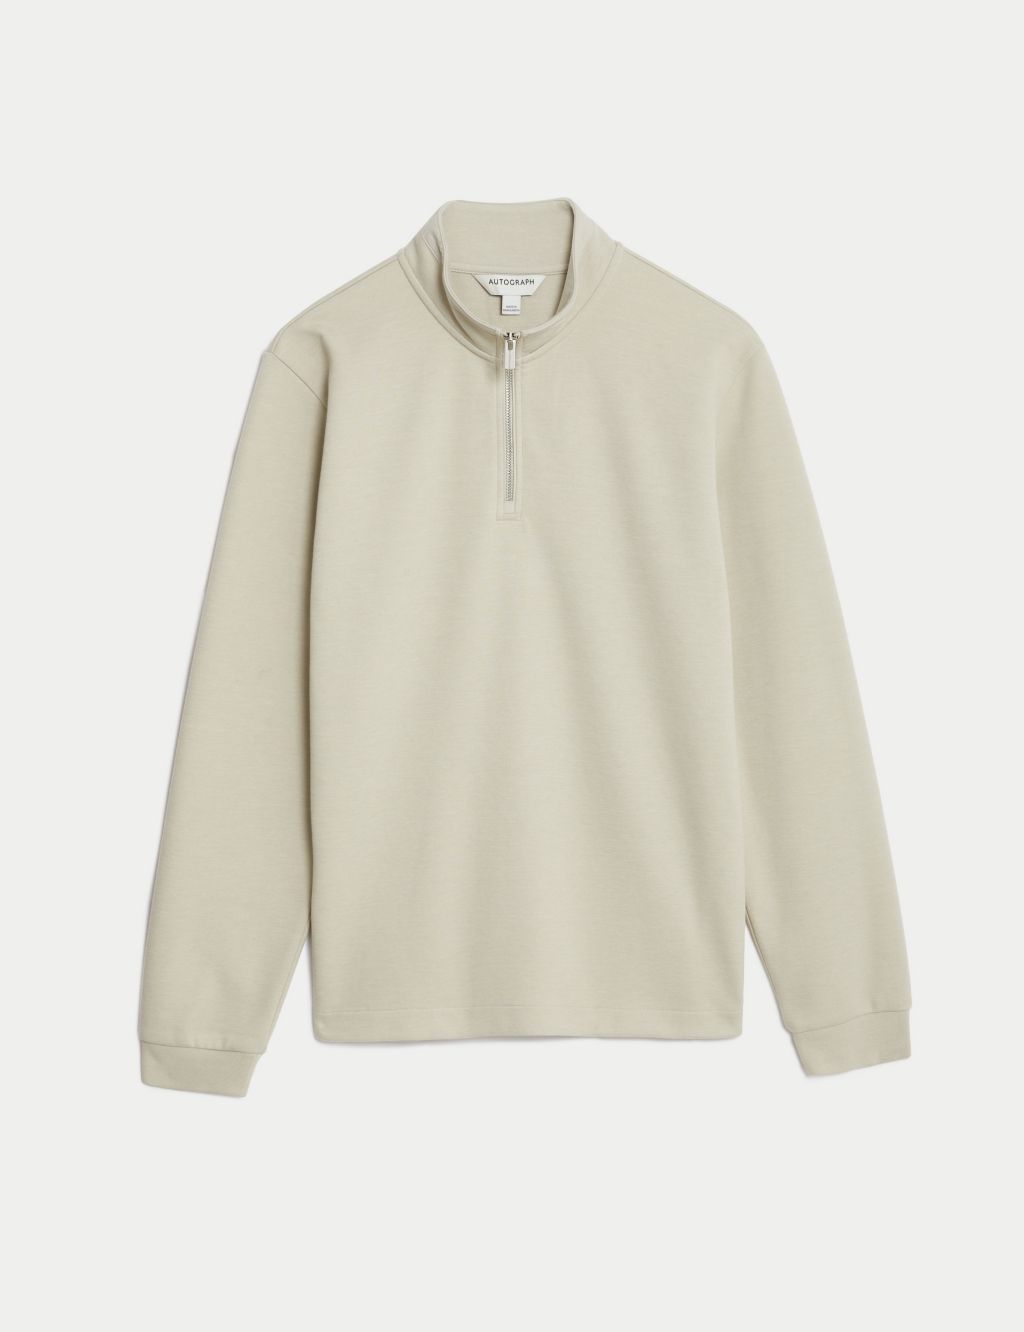 Cotton Blend Half Zip Sweatshirt image 1